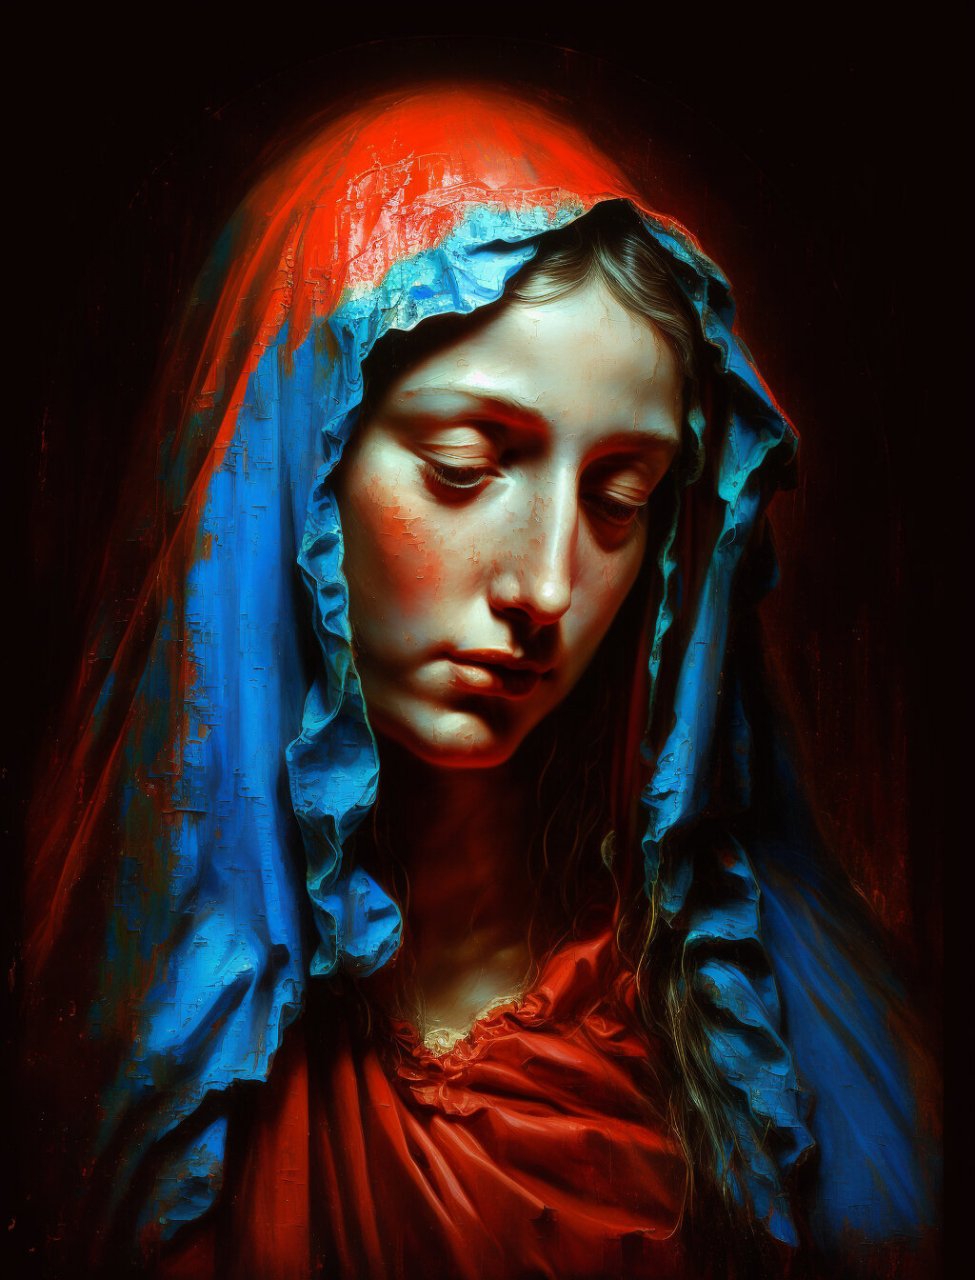 圣母油画单人图片